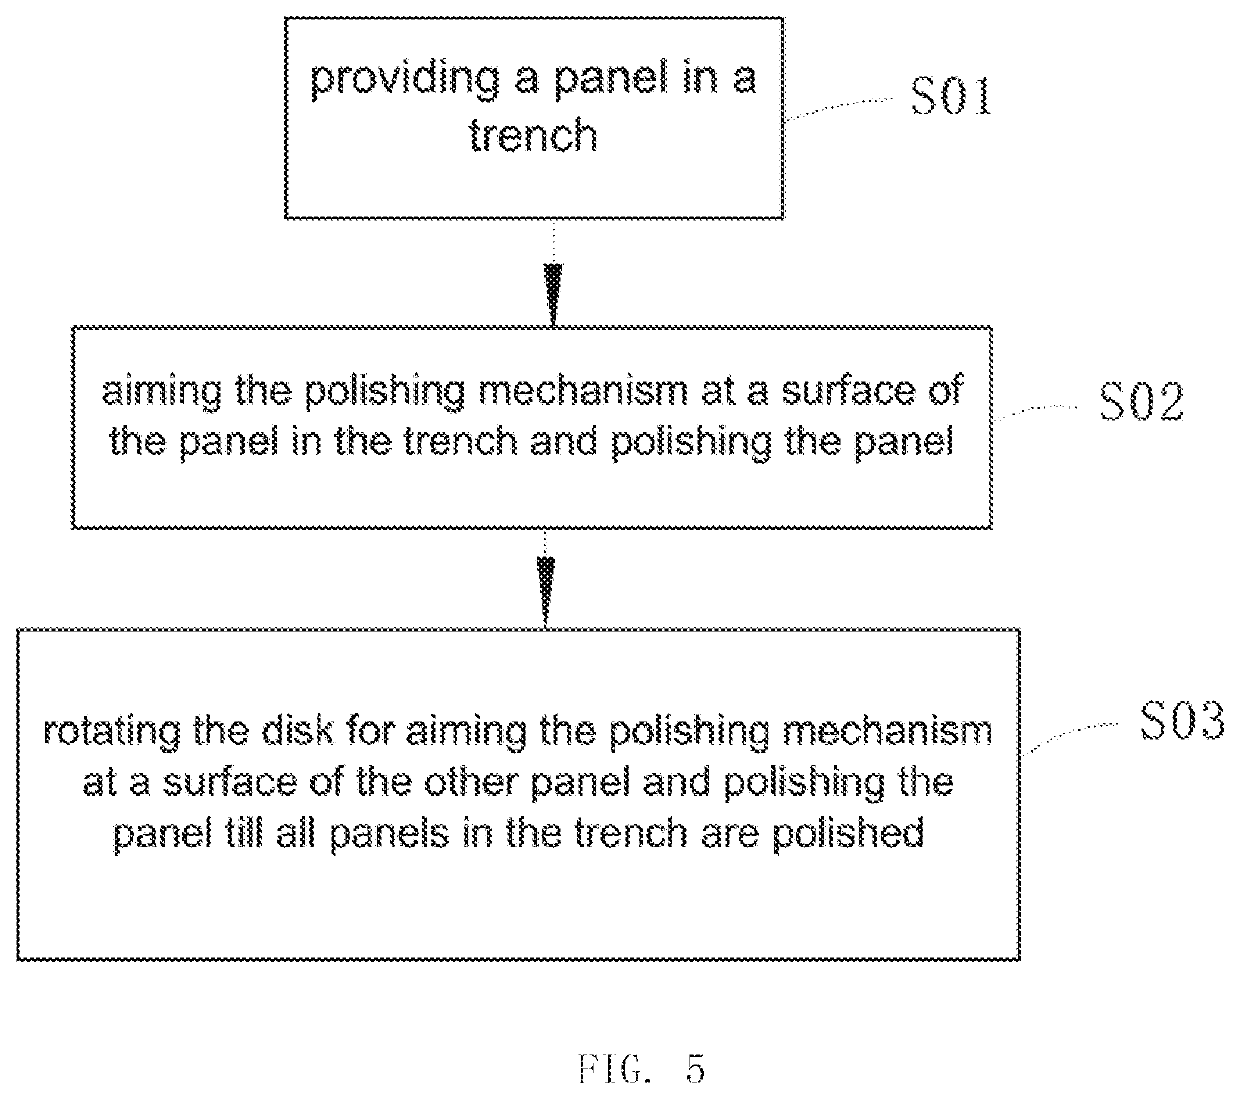 Panel polishing apparatuses and a panel polishing method